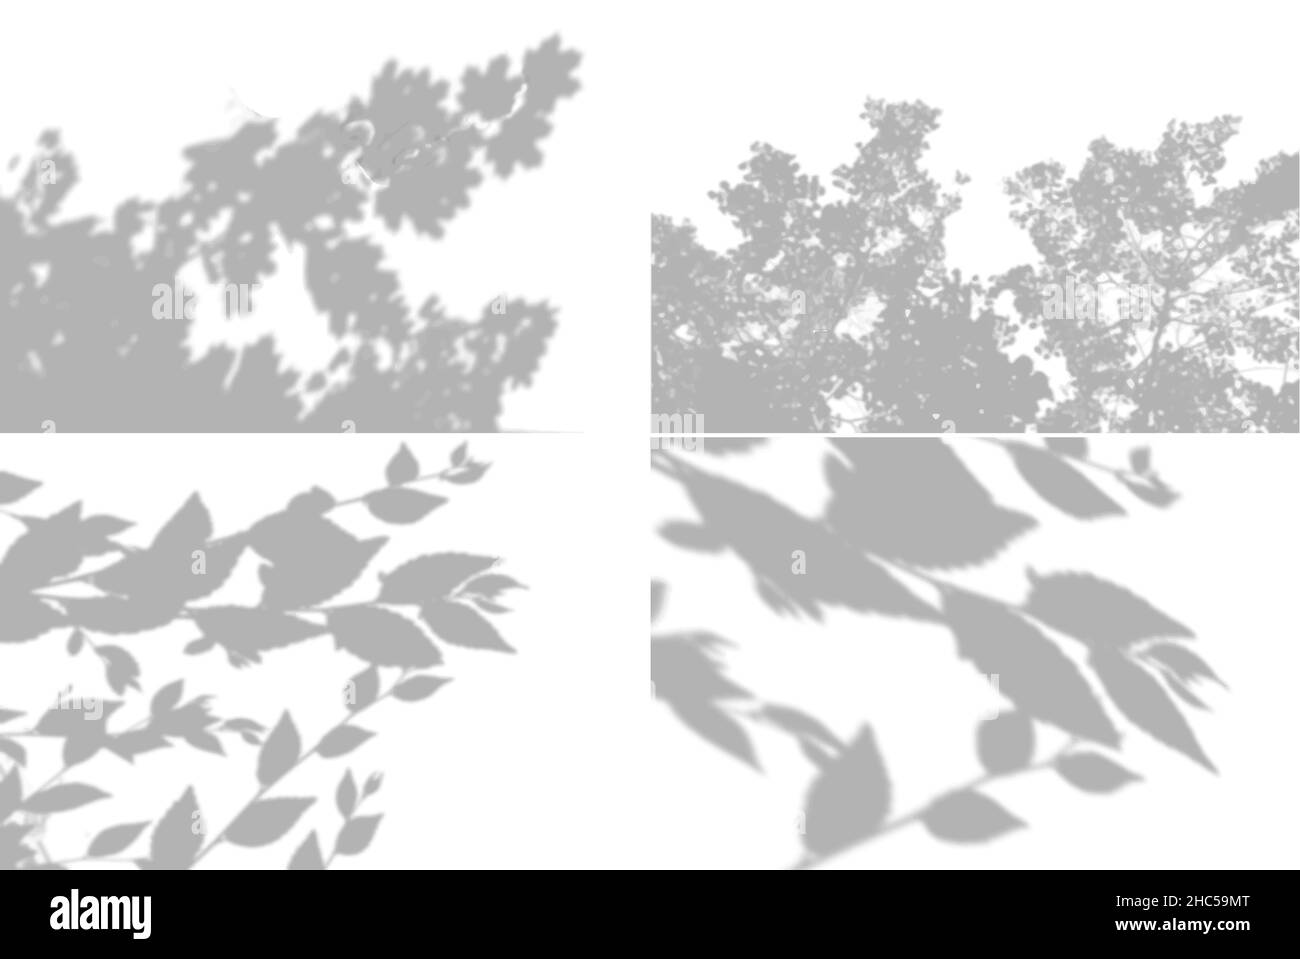 4 ombres d'été provenant de feuilles d'érable, feuilles de saule sur un mur blanc.Blanc et noir pour la photo ou la maquette Illustration de Vecteur